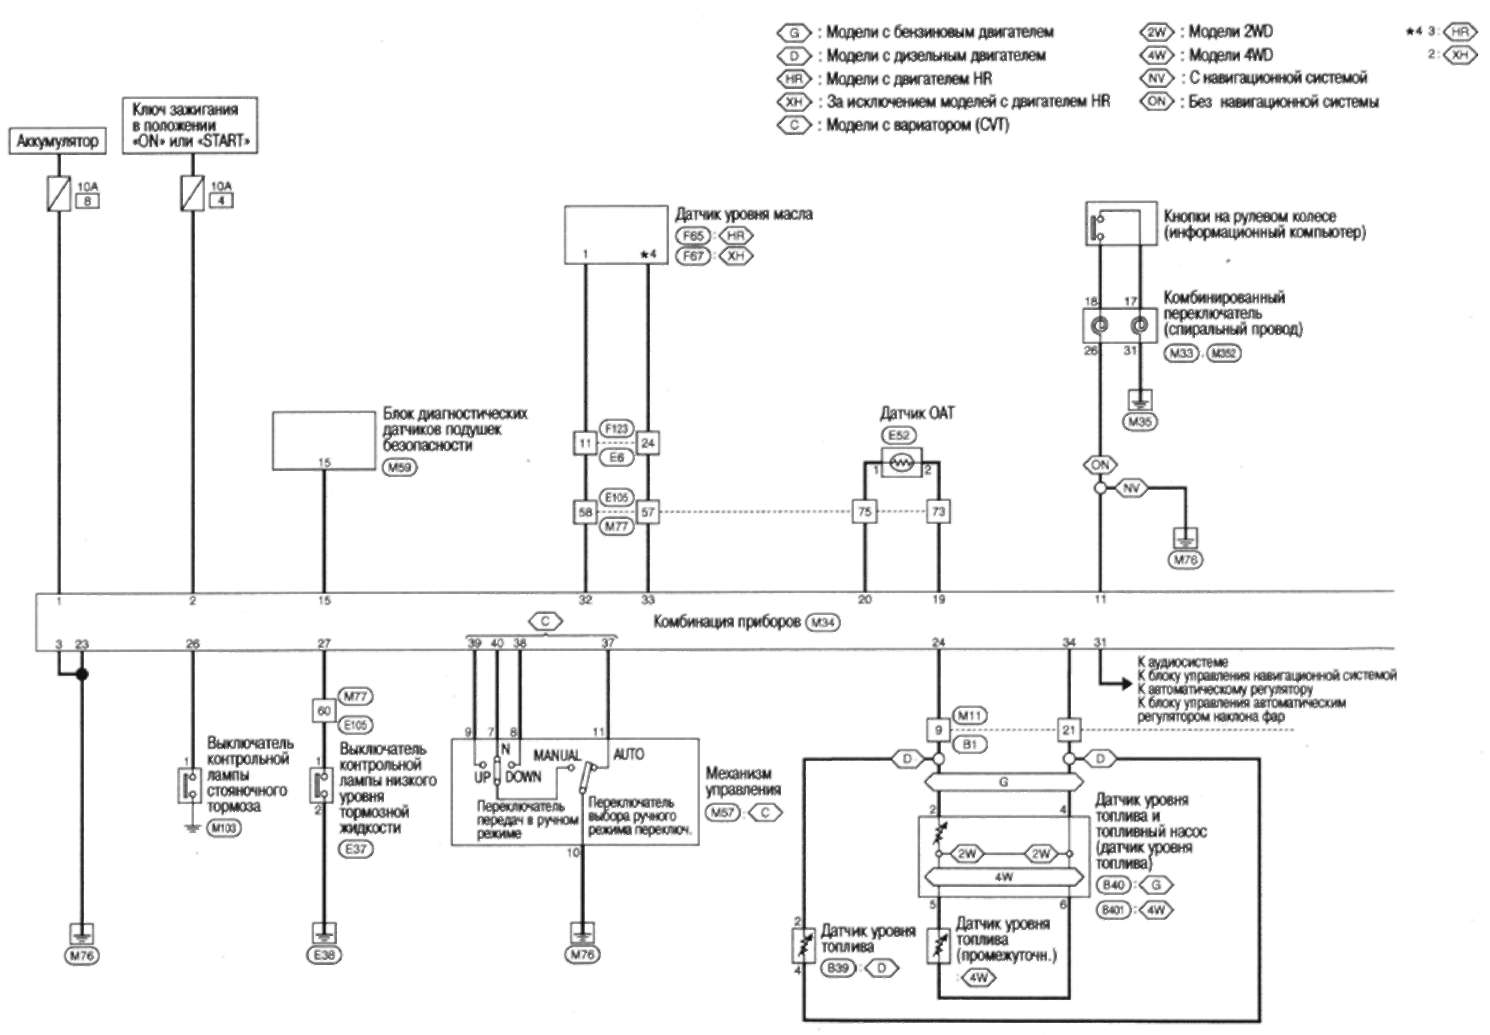 19.2.4 схема электрических соединений - комбинация приборов